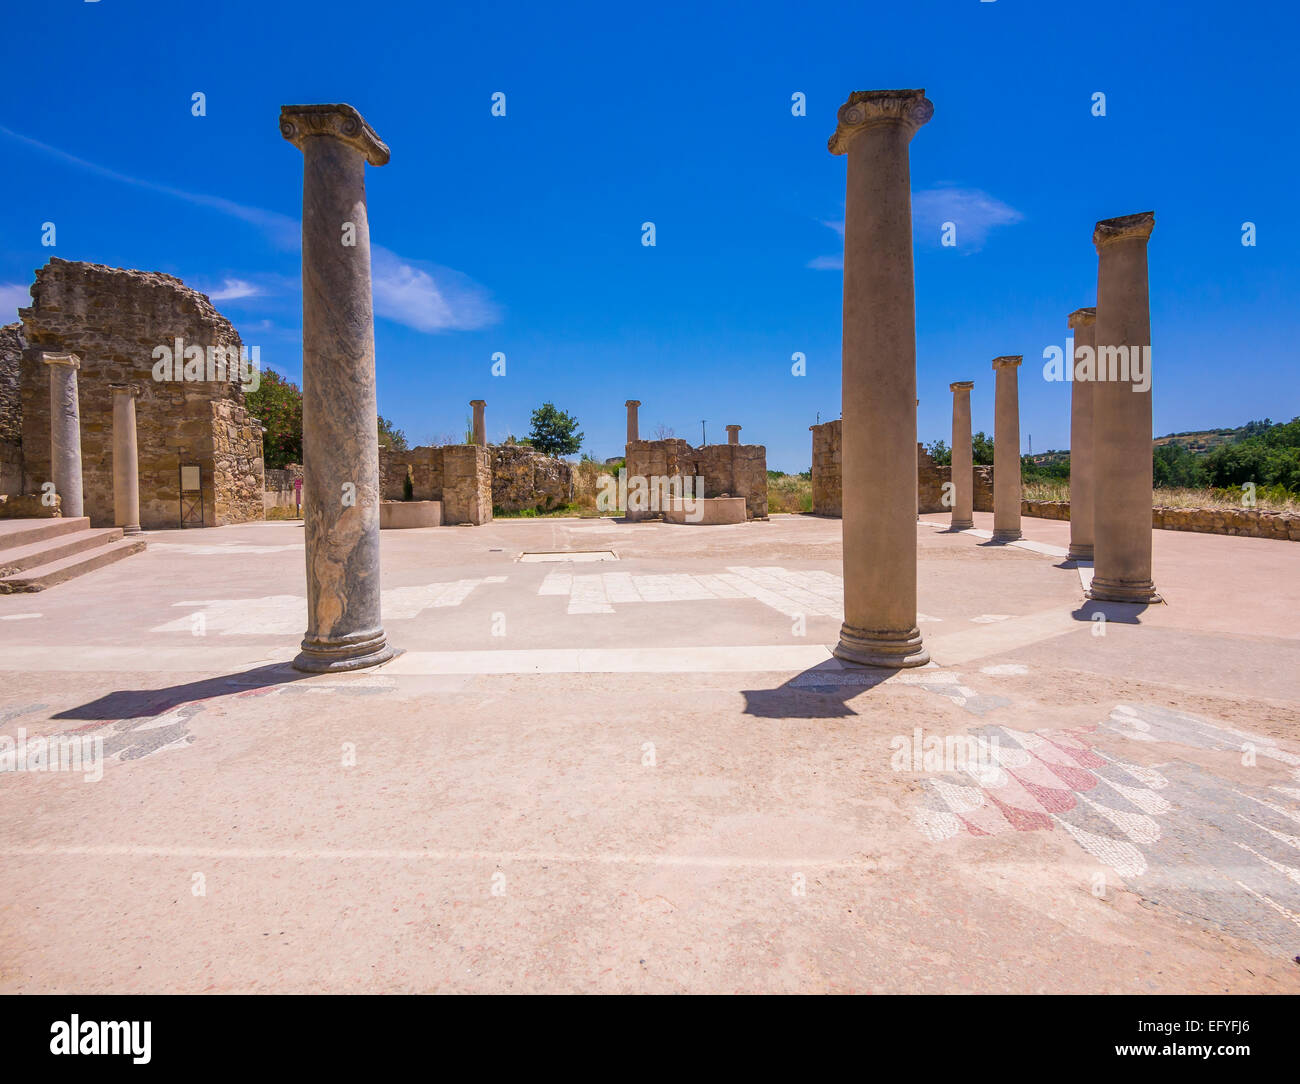 Villa Romana del Casale, UNESCO World Heritage Site, near Piazza Armerina, Province of Enna, Sicily, Italy Stock Photo